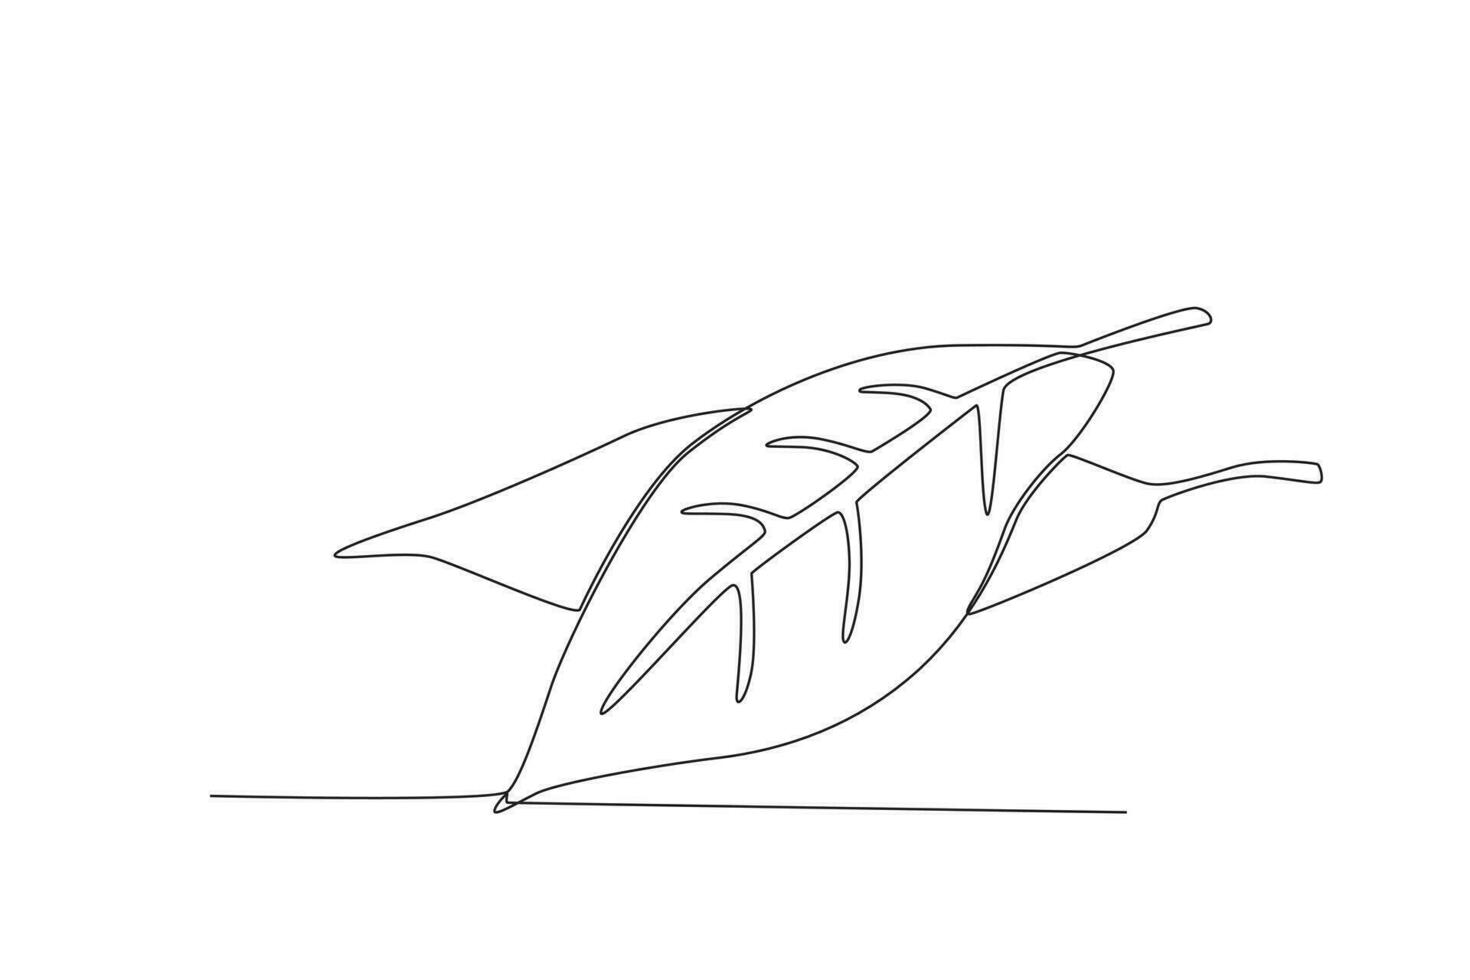 soltero uno línea dibujo bahía hoja vegetal concepto continuo línea dibujar diseño gráfico vector ilustración